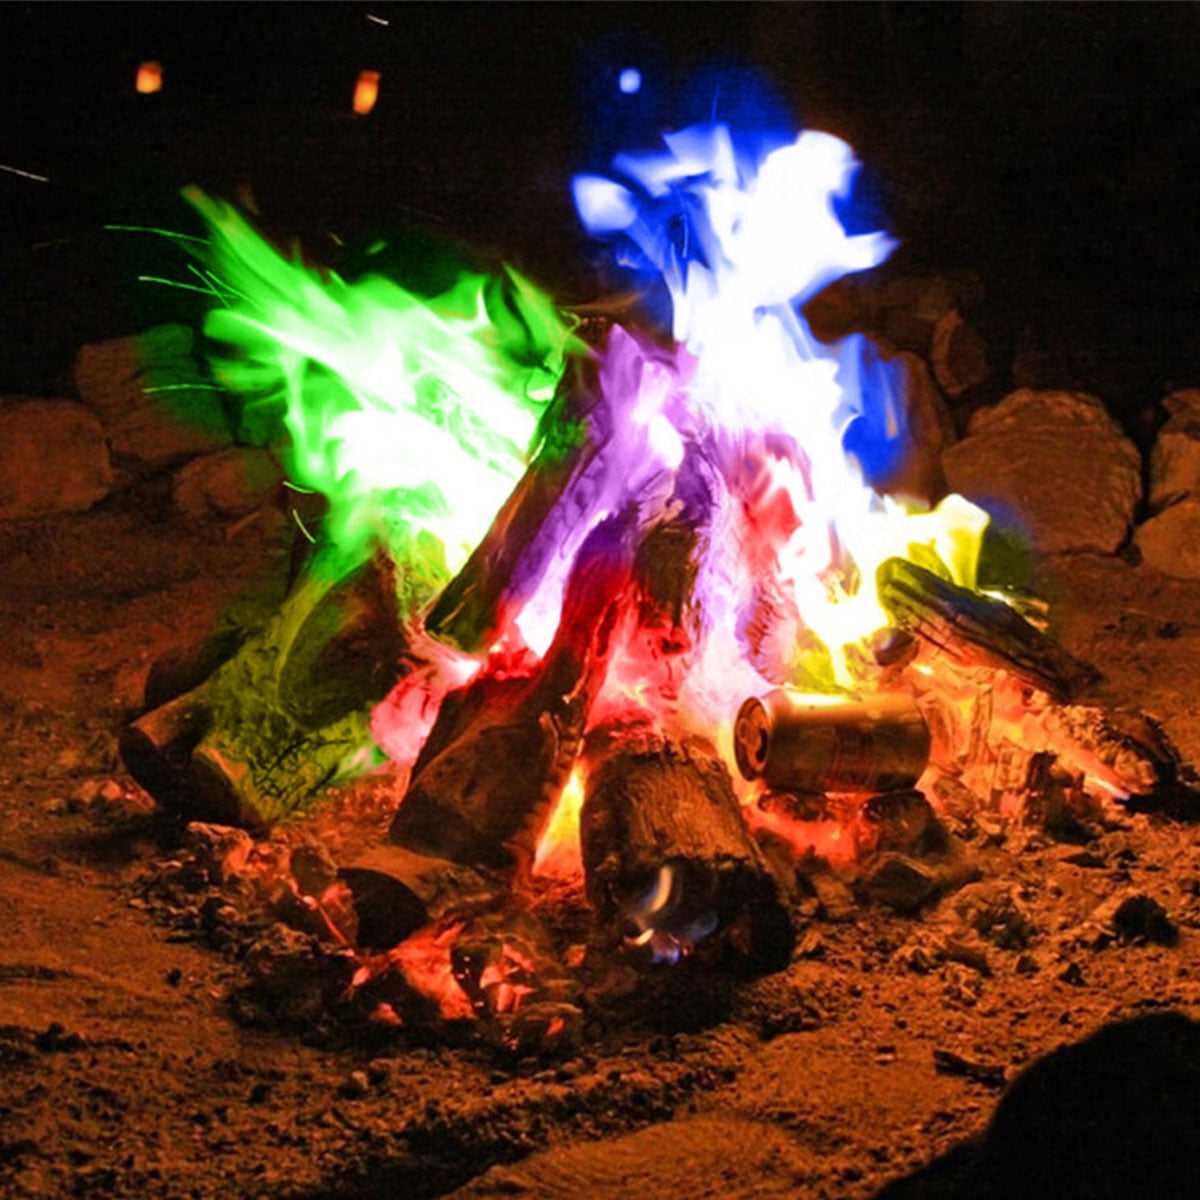 Mystical Fire Magic Tricks Coloured Flames Bonfire Sachets Fireplace Pit Patio 